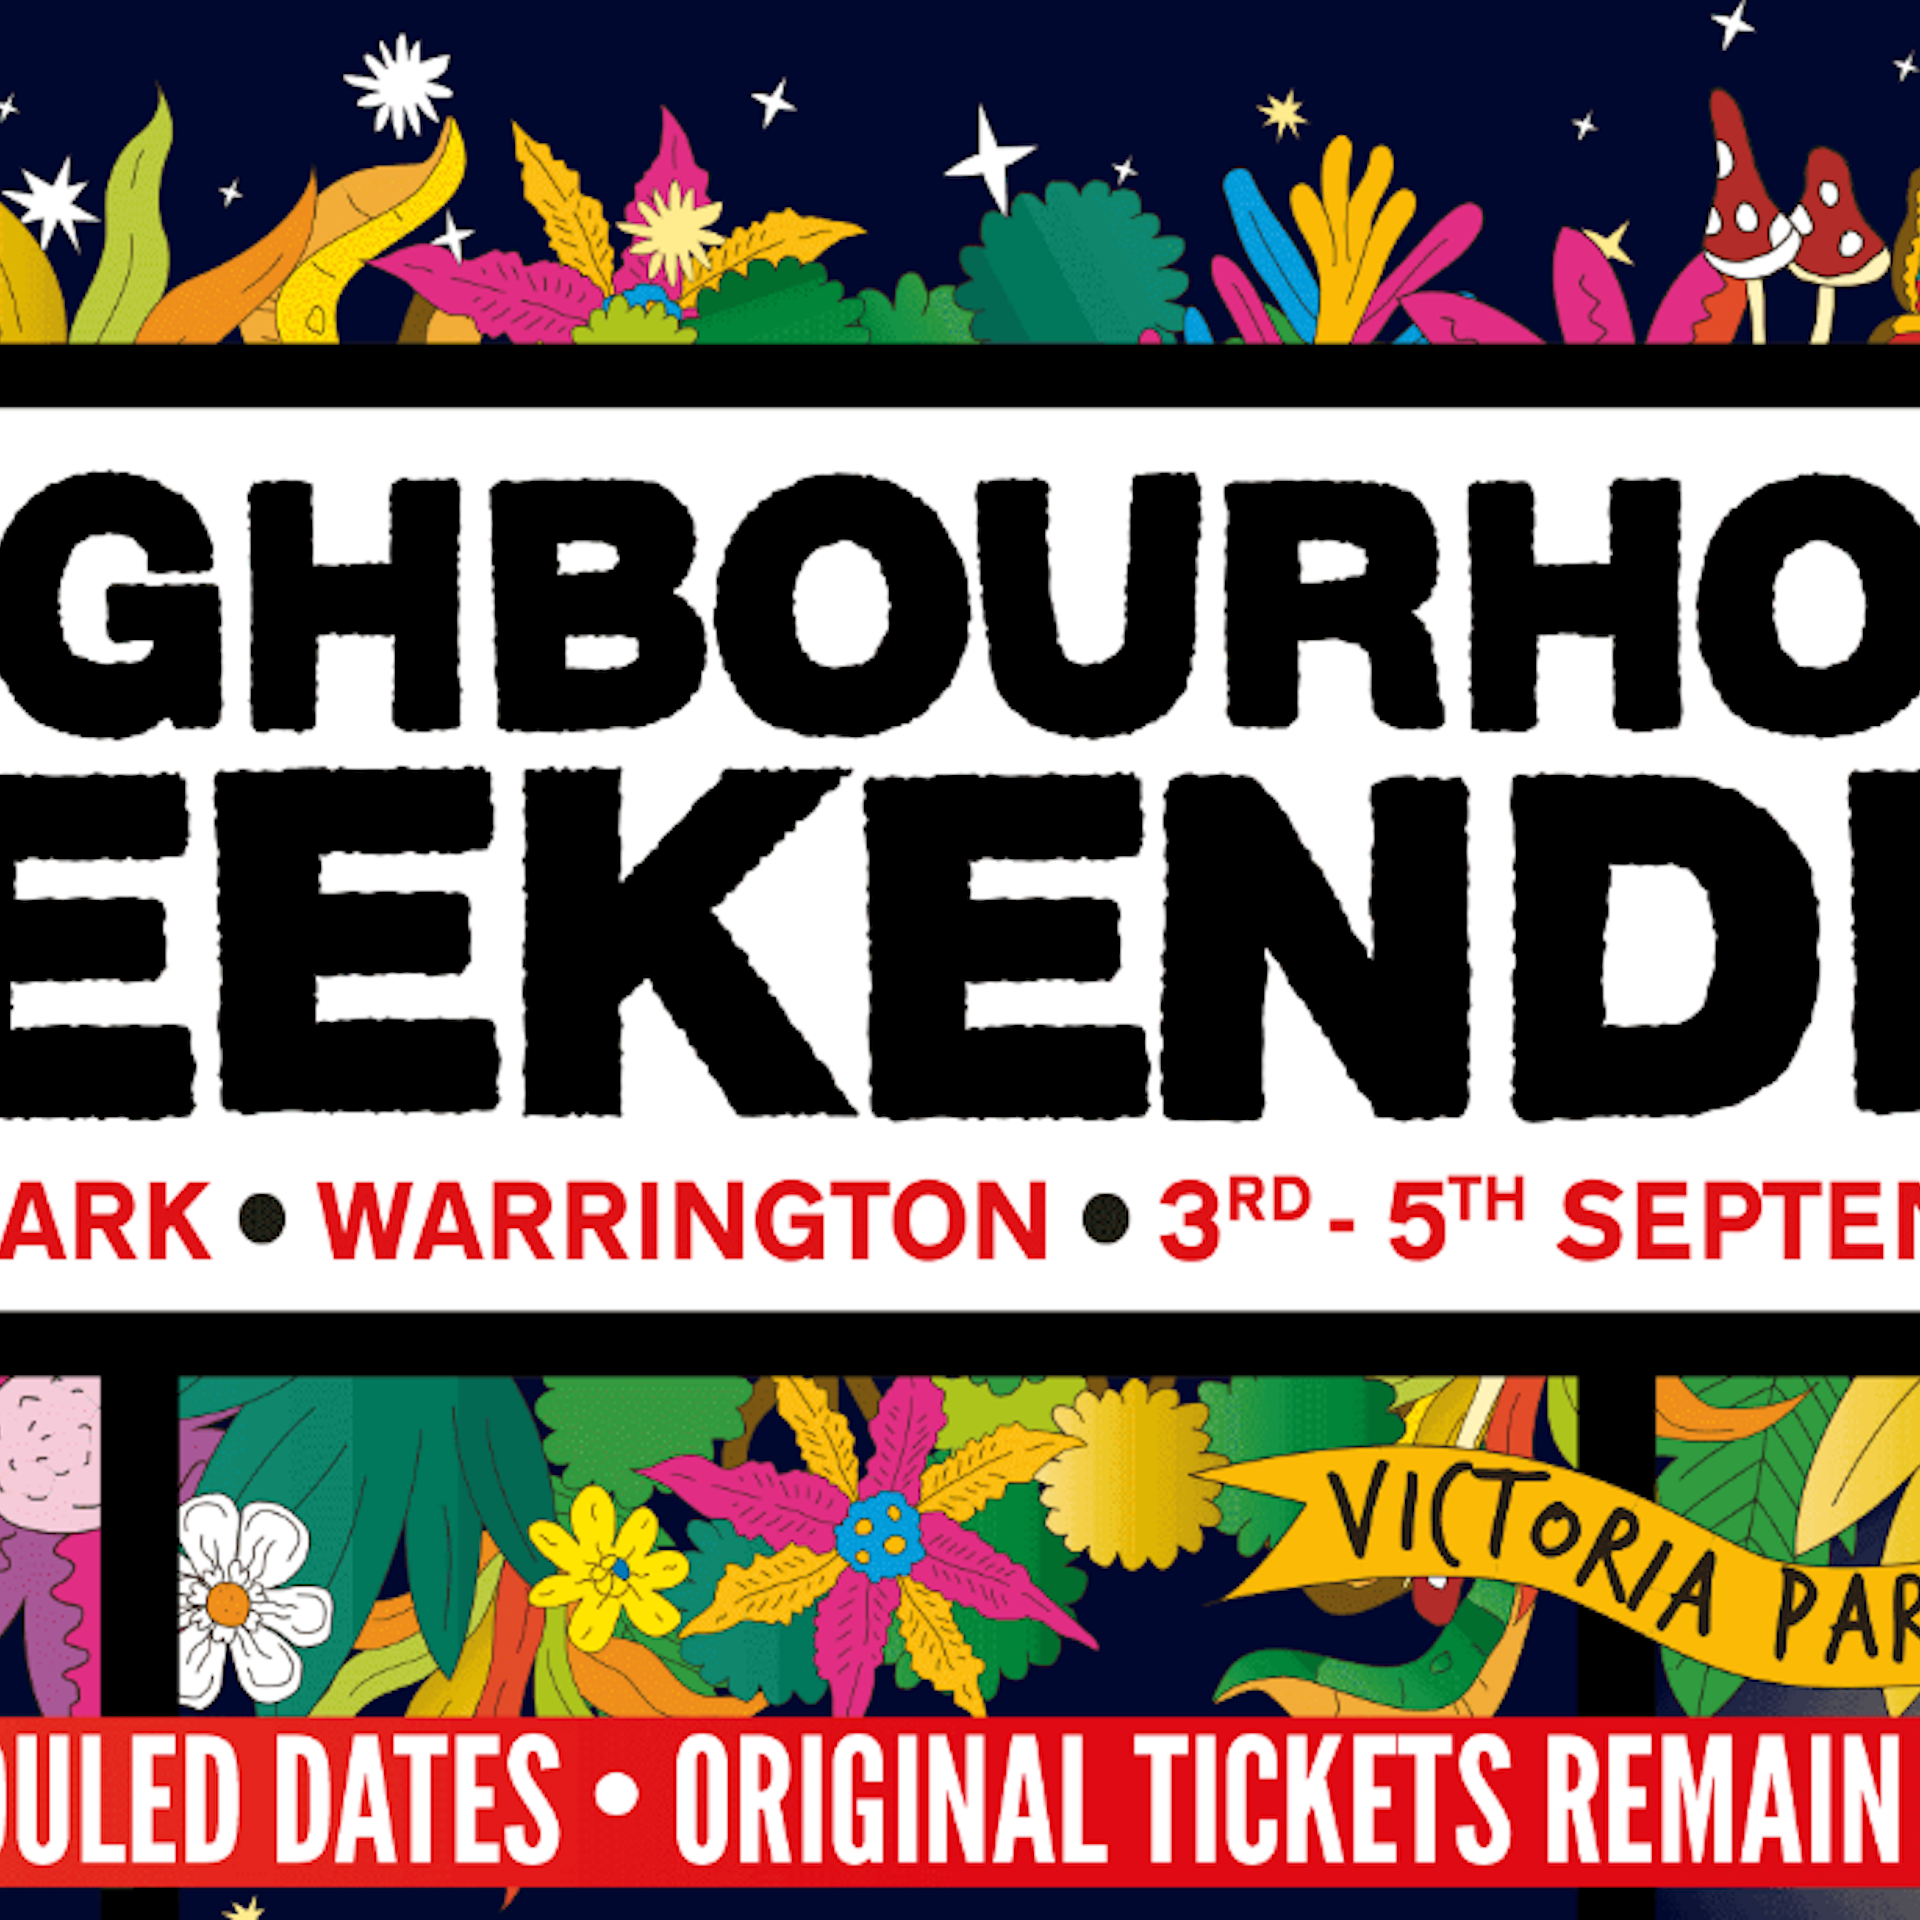 Neighbourhood Weekender Tickets & Tour Dates